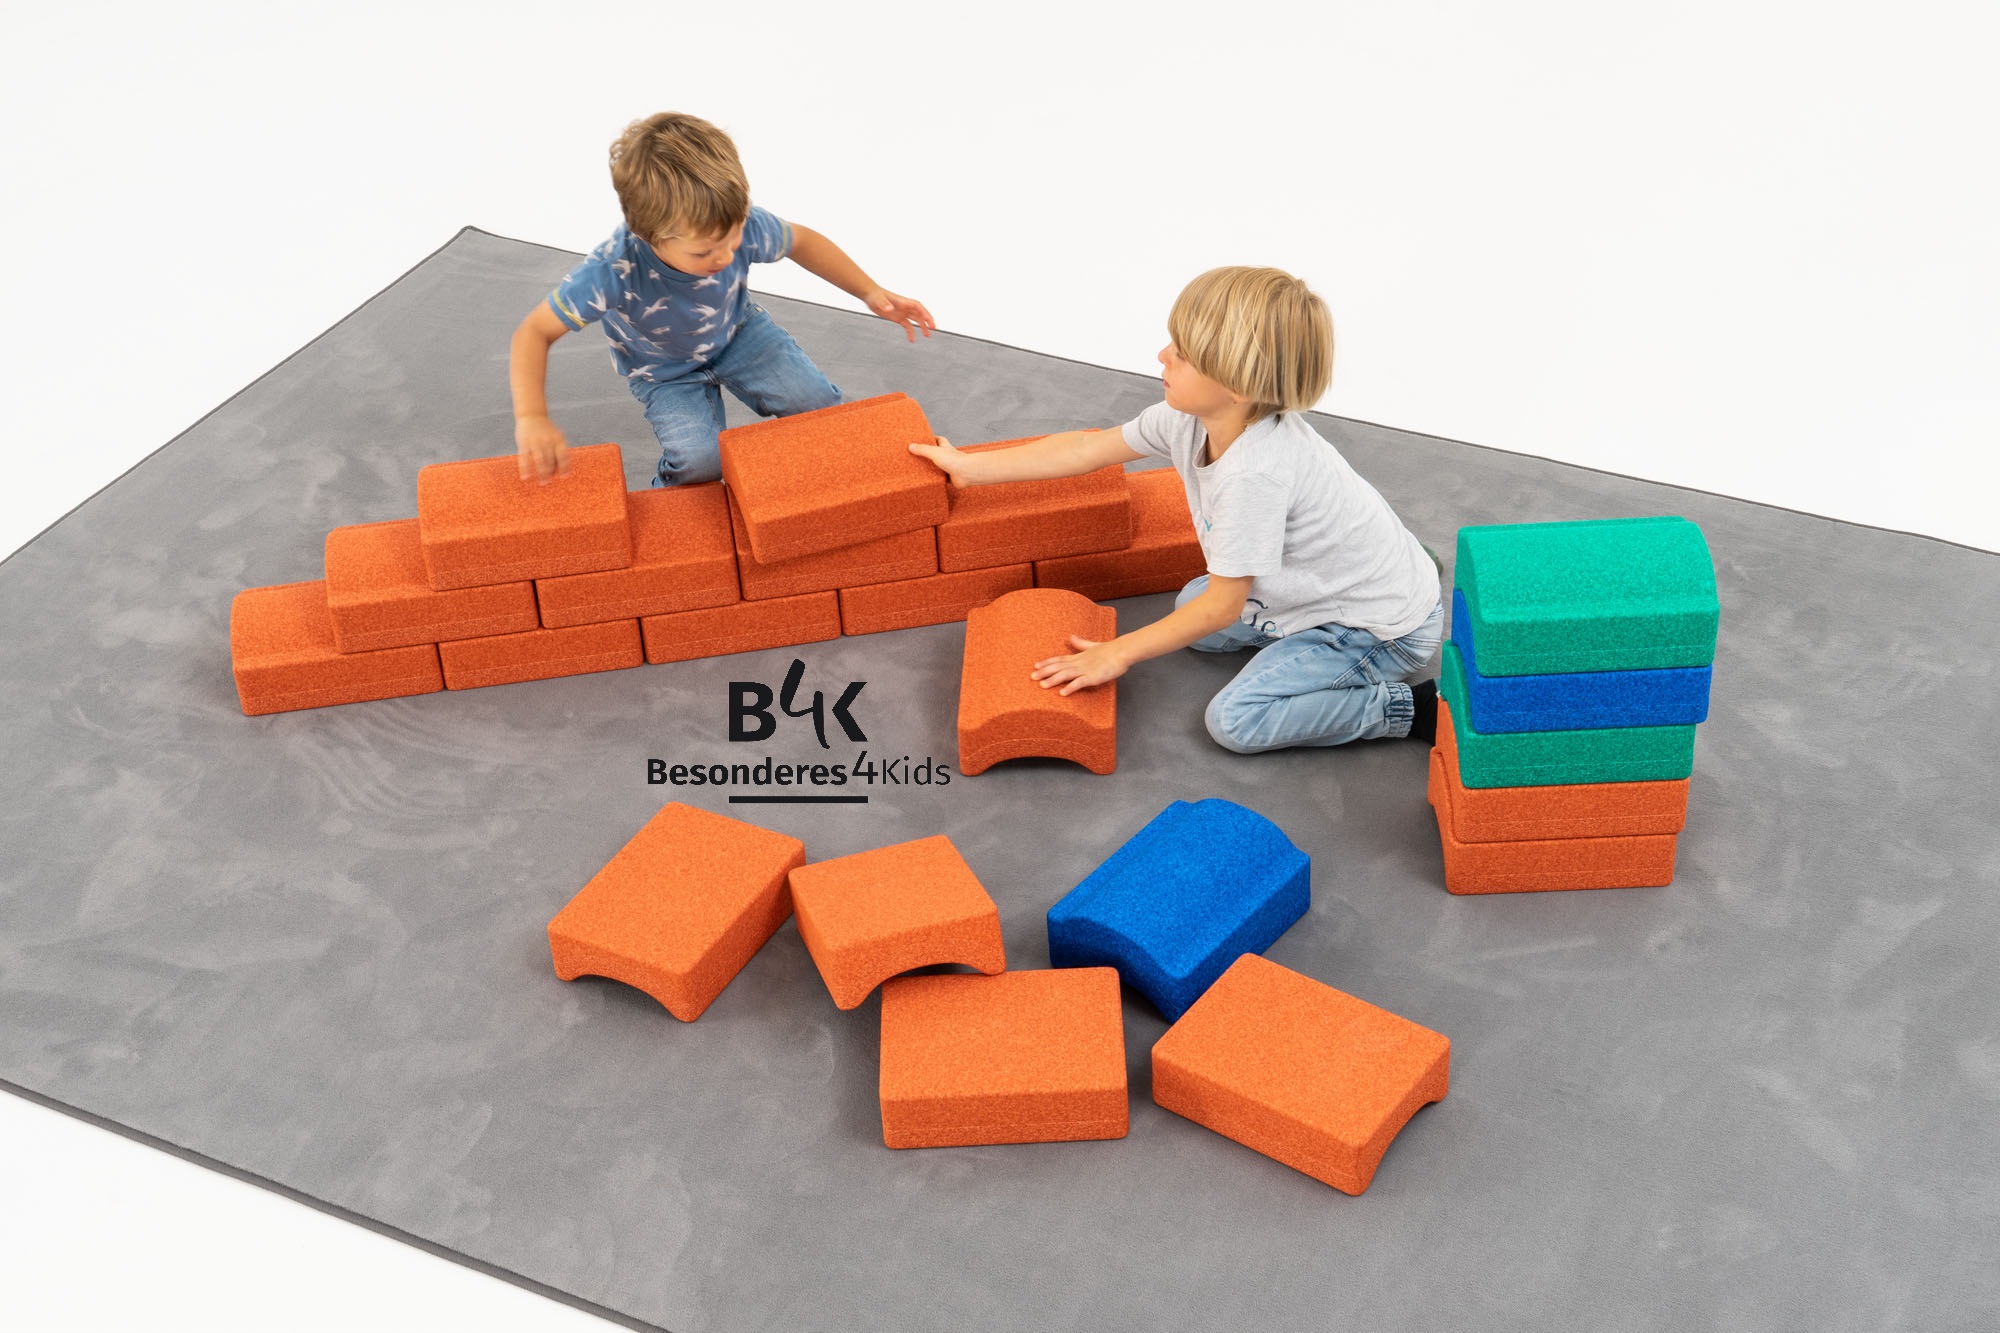 Bauen und Erleben Paket - das B4K Markenprodukt  